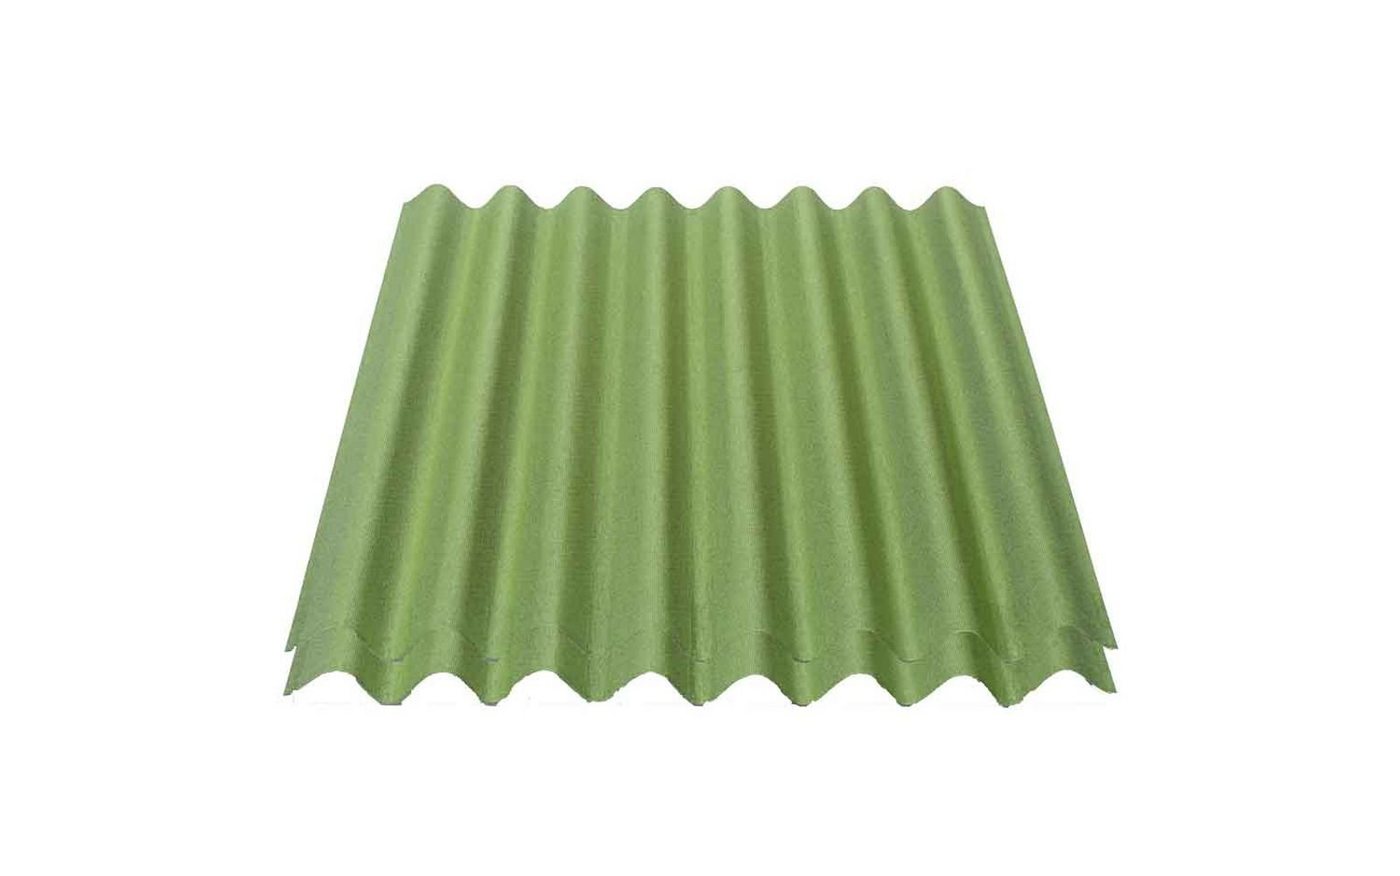 Onduline Dachpappe Onduline Easyline Dachplatte Wandplatte Bitumenwellplatten Wellplatte 2x0,76m² - grün, wellig, 1.52 m² pro Paket, (2-St) von Onduline